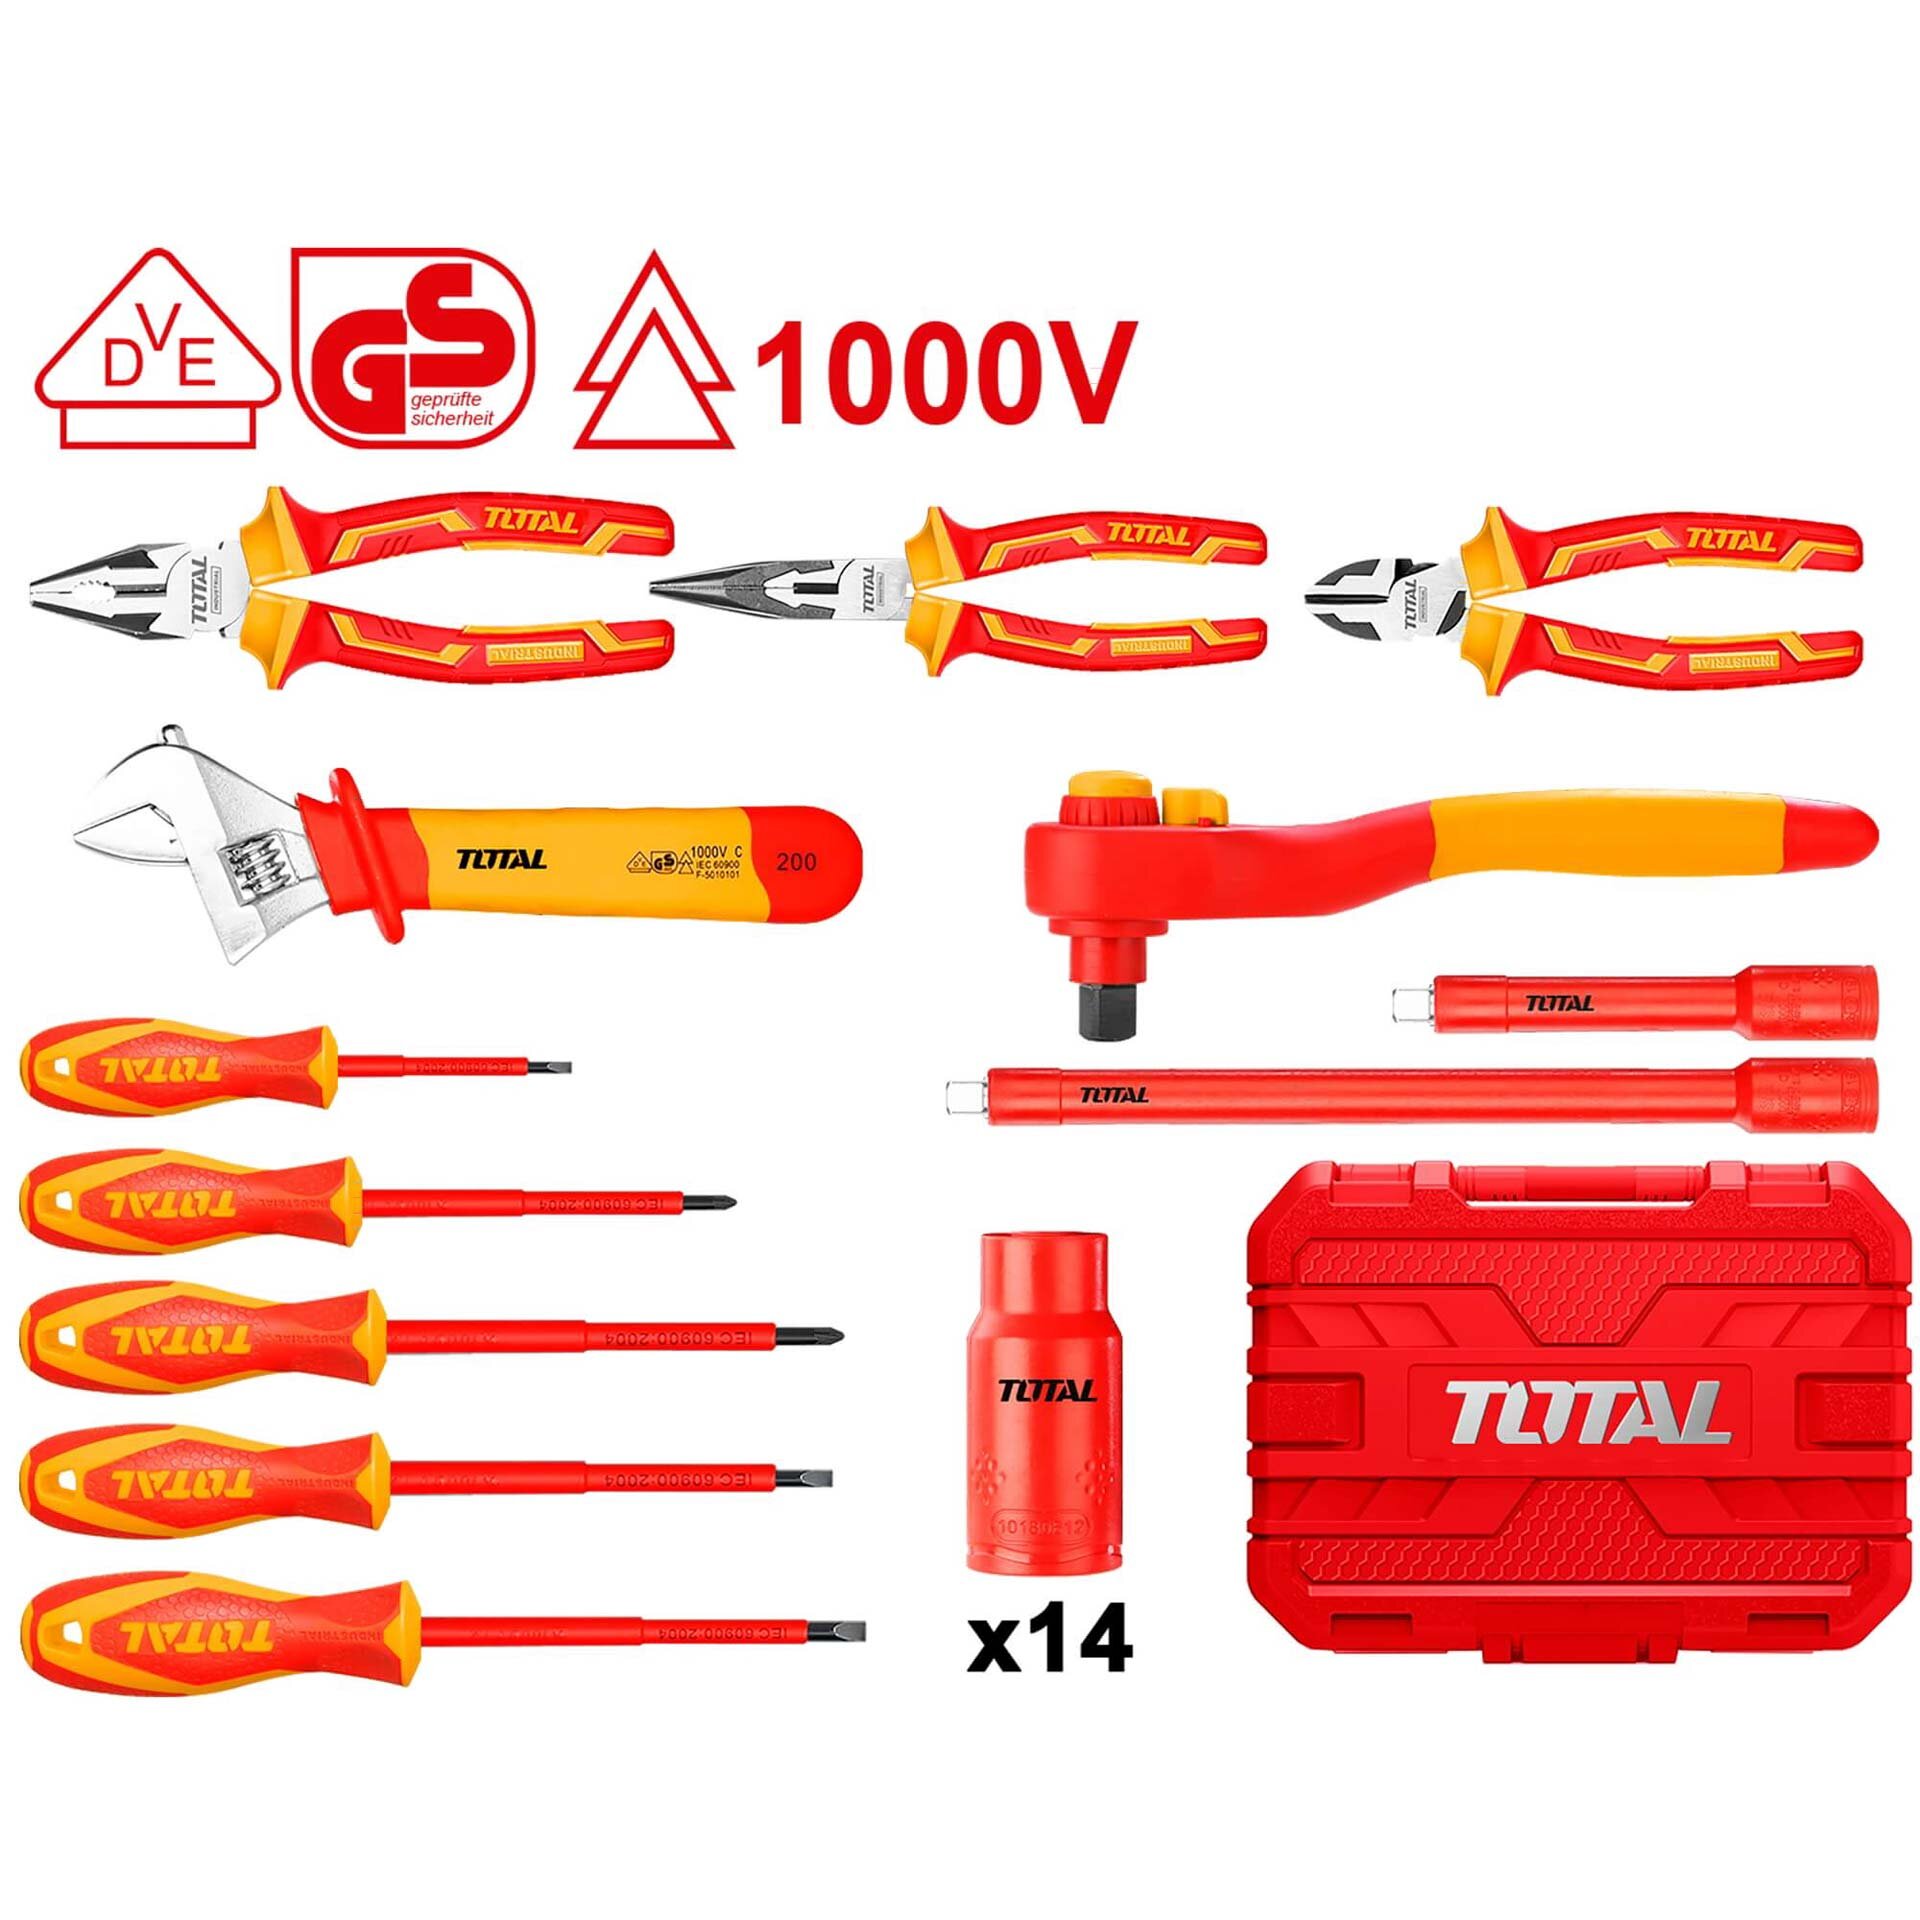 26PCS insulated hand tools set (THKITH2601)